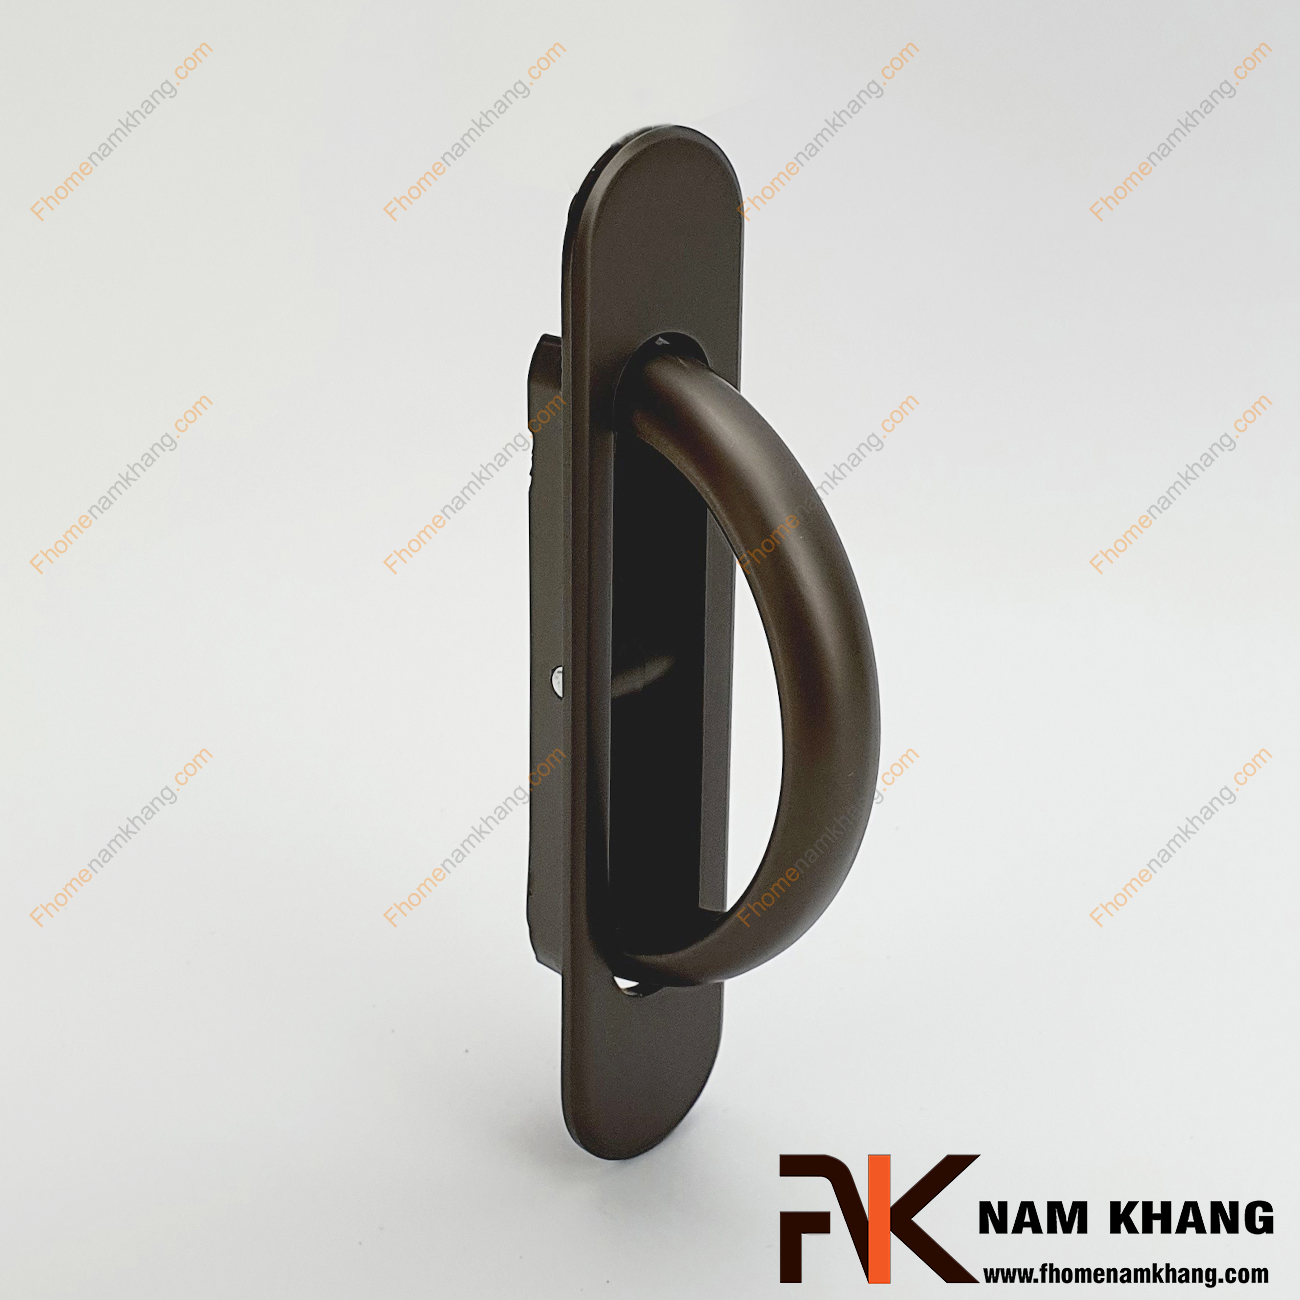 Tay âm lật kéo dạng trơn màu xám NK436-X là dạng tay nắm âm tủ độc đáo, sản phẩm được lắp âm vào trong cánh cửa tủ như các dạng tay nắm âm khác tuy nhiên phần để nắm kéo mở có thêm một thao tác vấn vào phần thân ở giữa để phần nắm kéo được xoay ra.